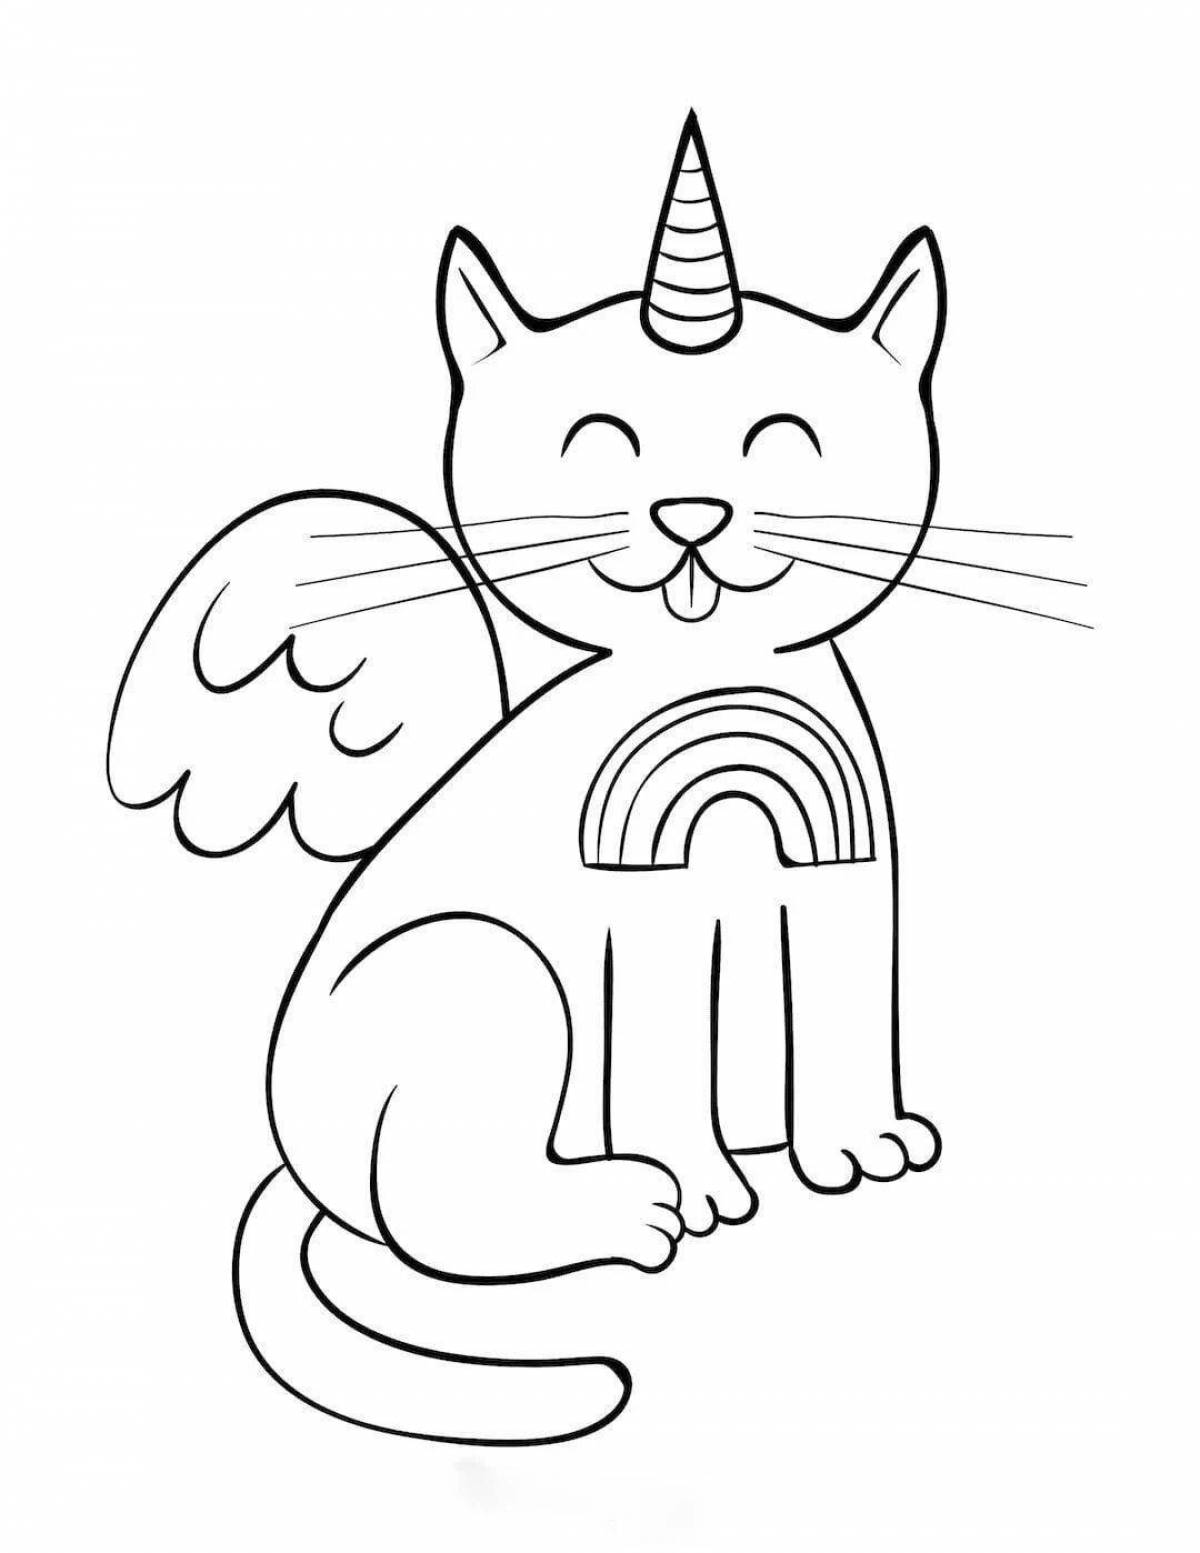 Увлекательная раскраска кошка с крыльями